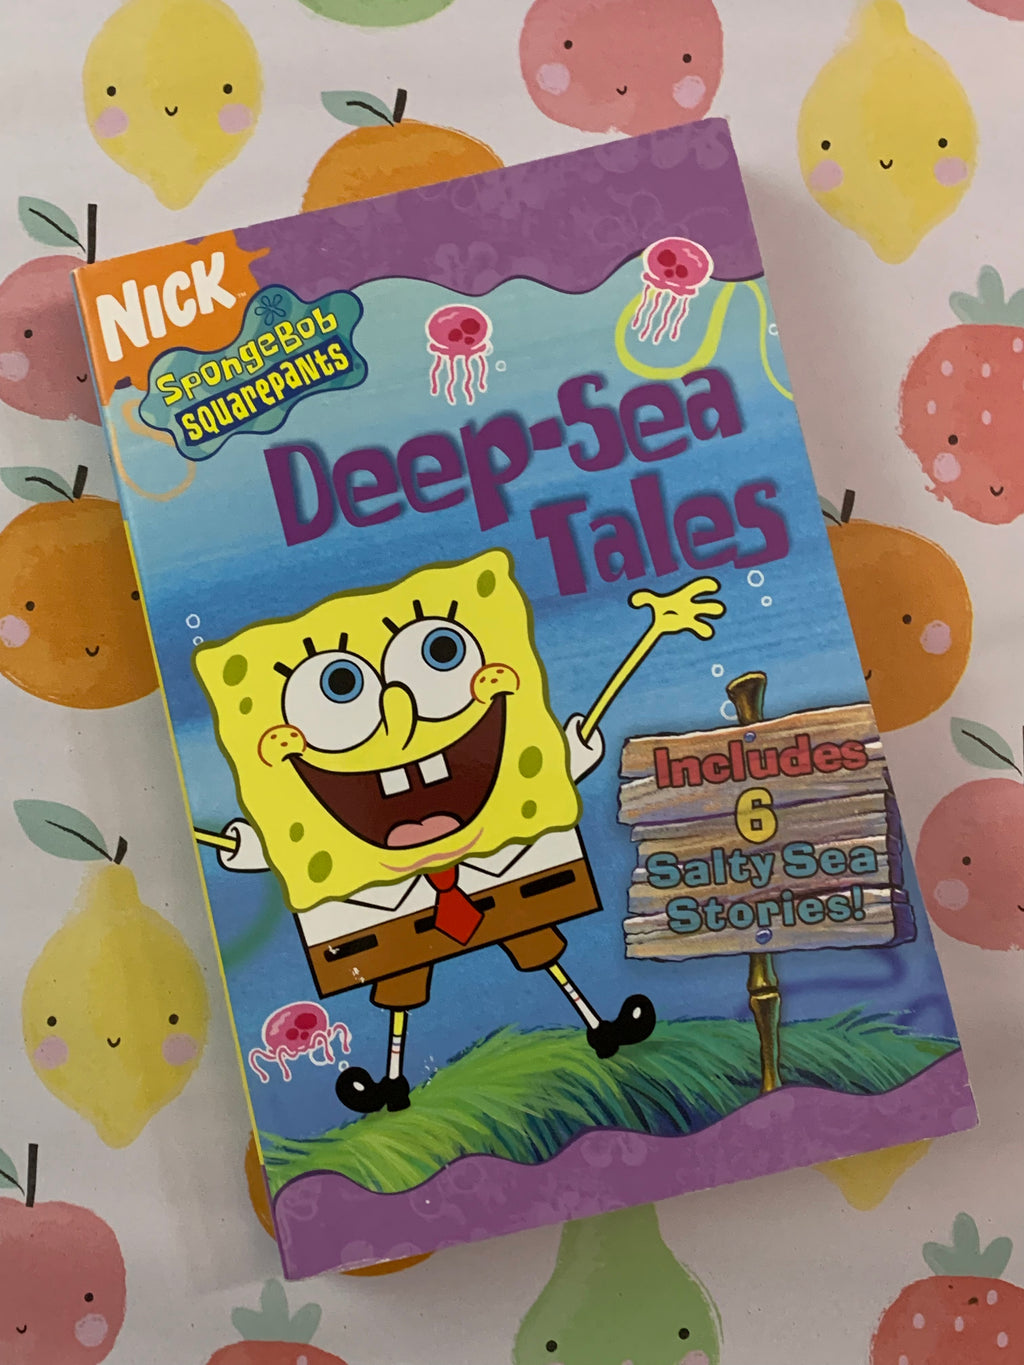 Spongebob Squarepants' Deep-Sea Tales: 6 Salty Sea Stories!